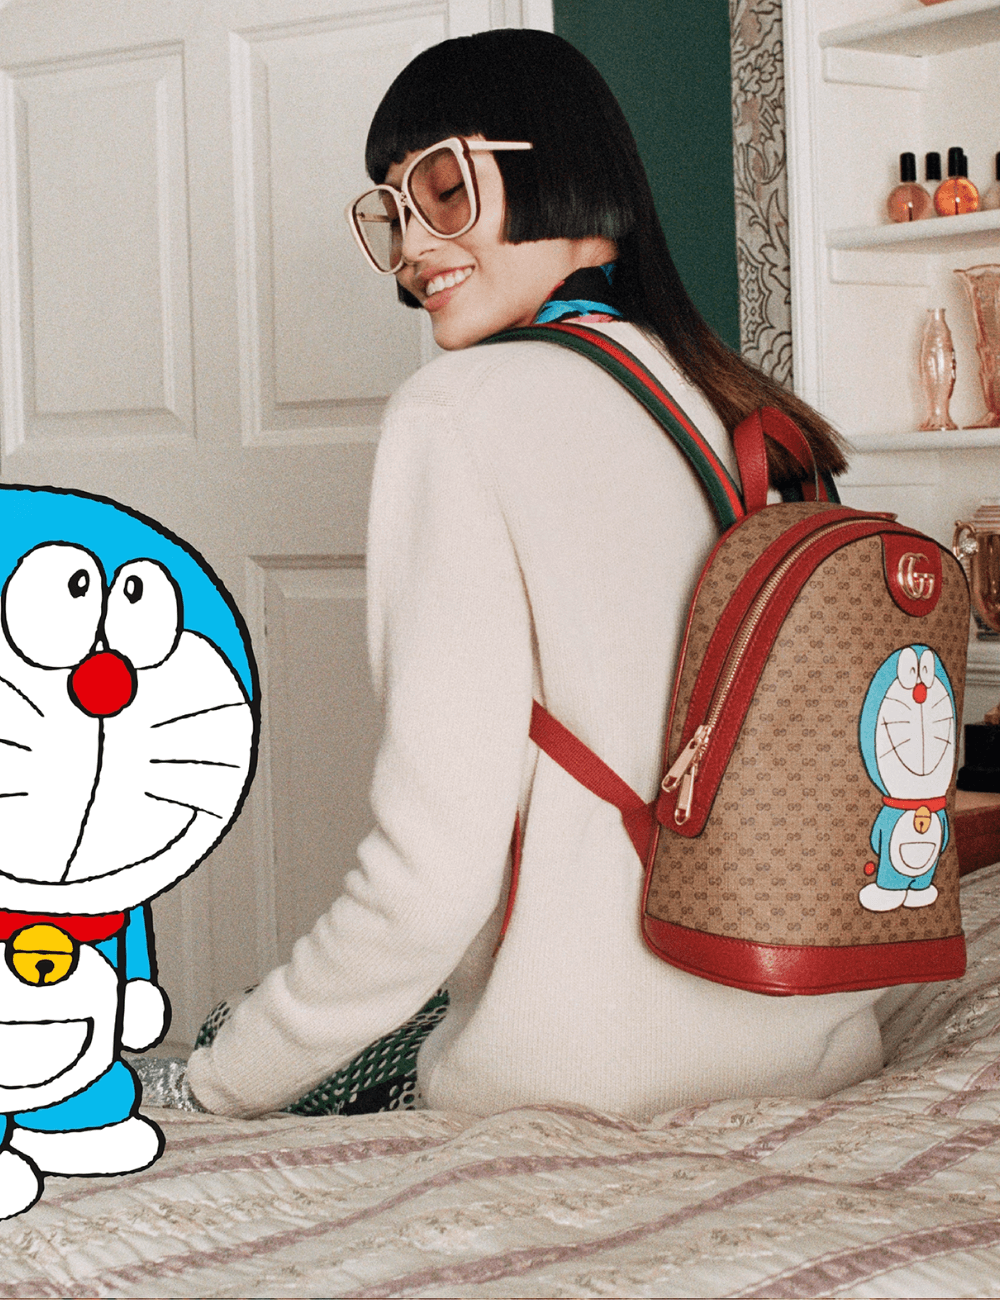 Gucci x Doraemon - roupas diversas - Anime - outono - mulher asiática de óculos sentada em uma cama de costas usando uma bolsa estampada com um desenho azul - https://stealthelook.com.br